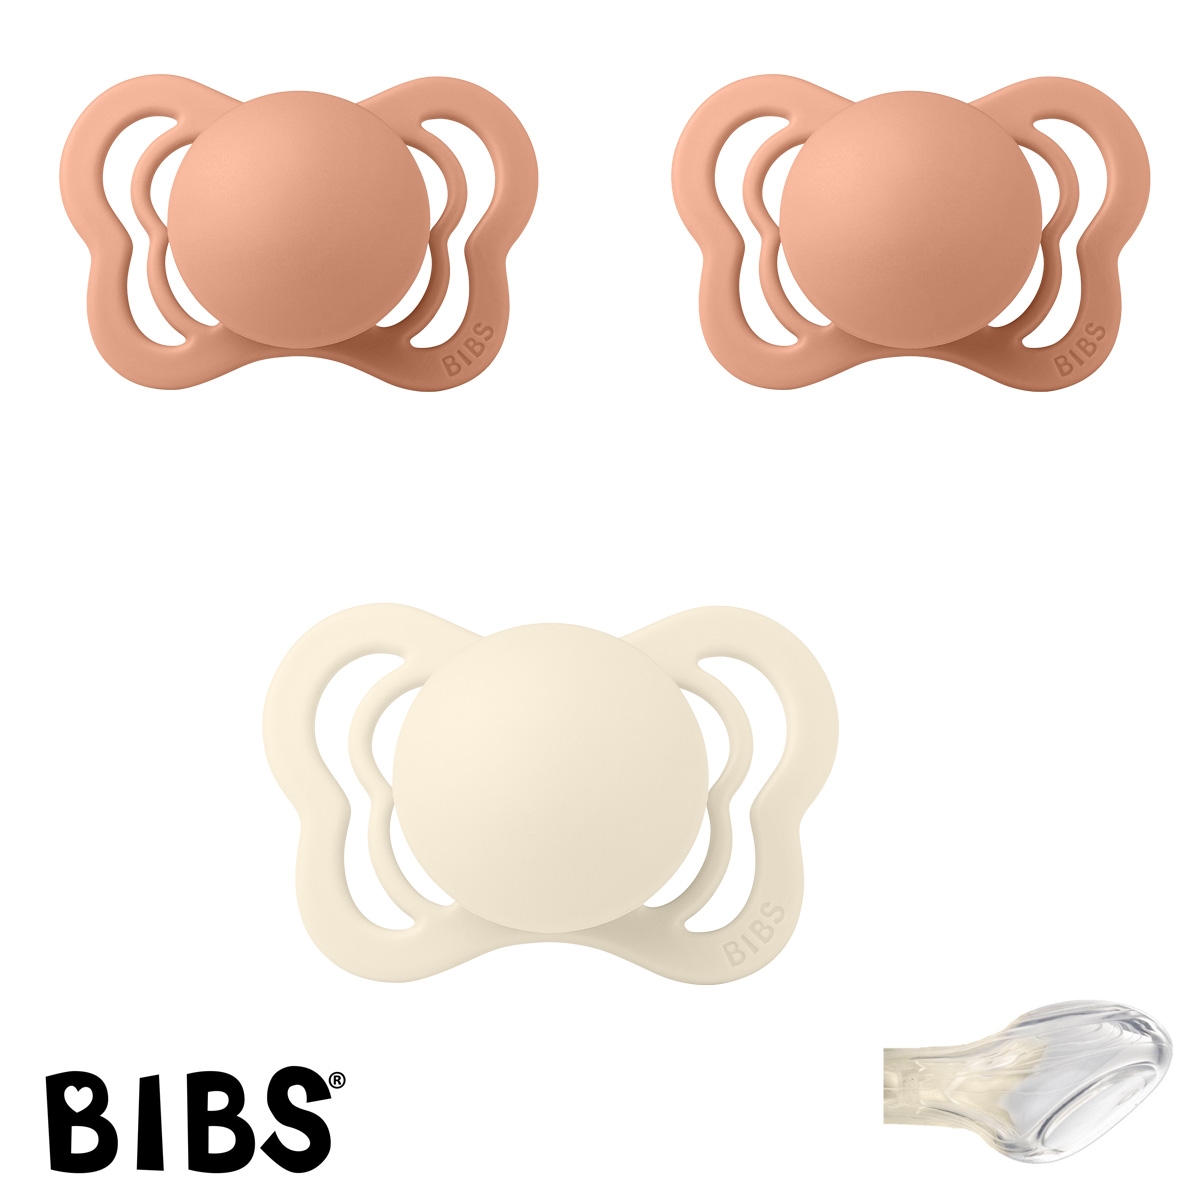 BIBS Couture Sutter med navn str1, 2 Peach, 1 Ivory, Anatomisk Silikone, Pakke med 3 sutter